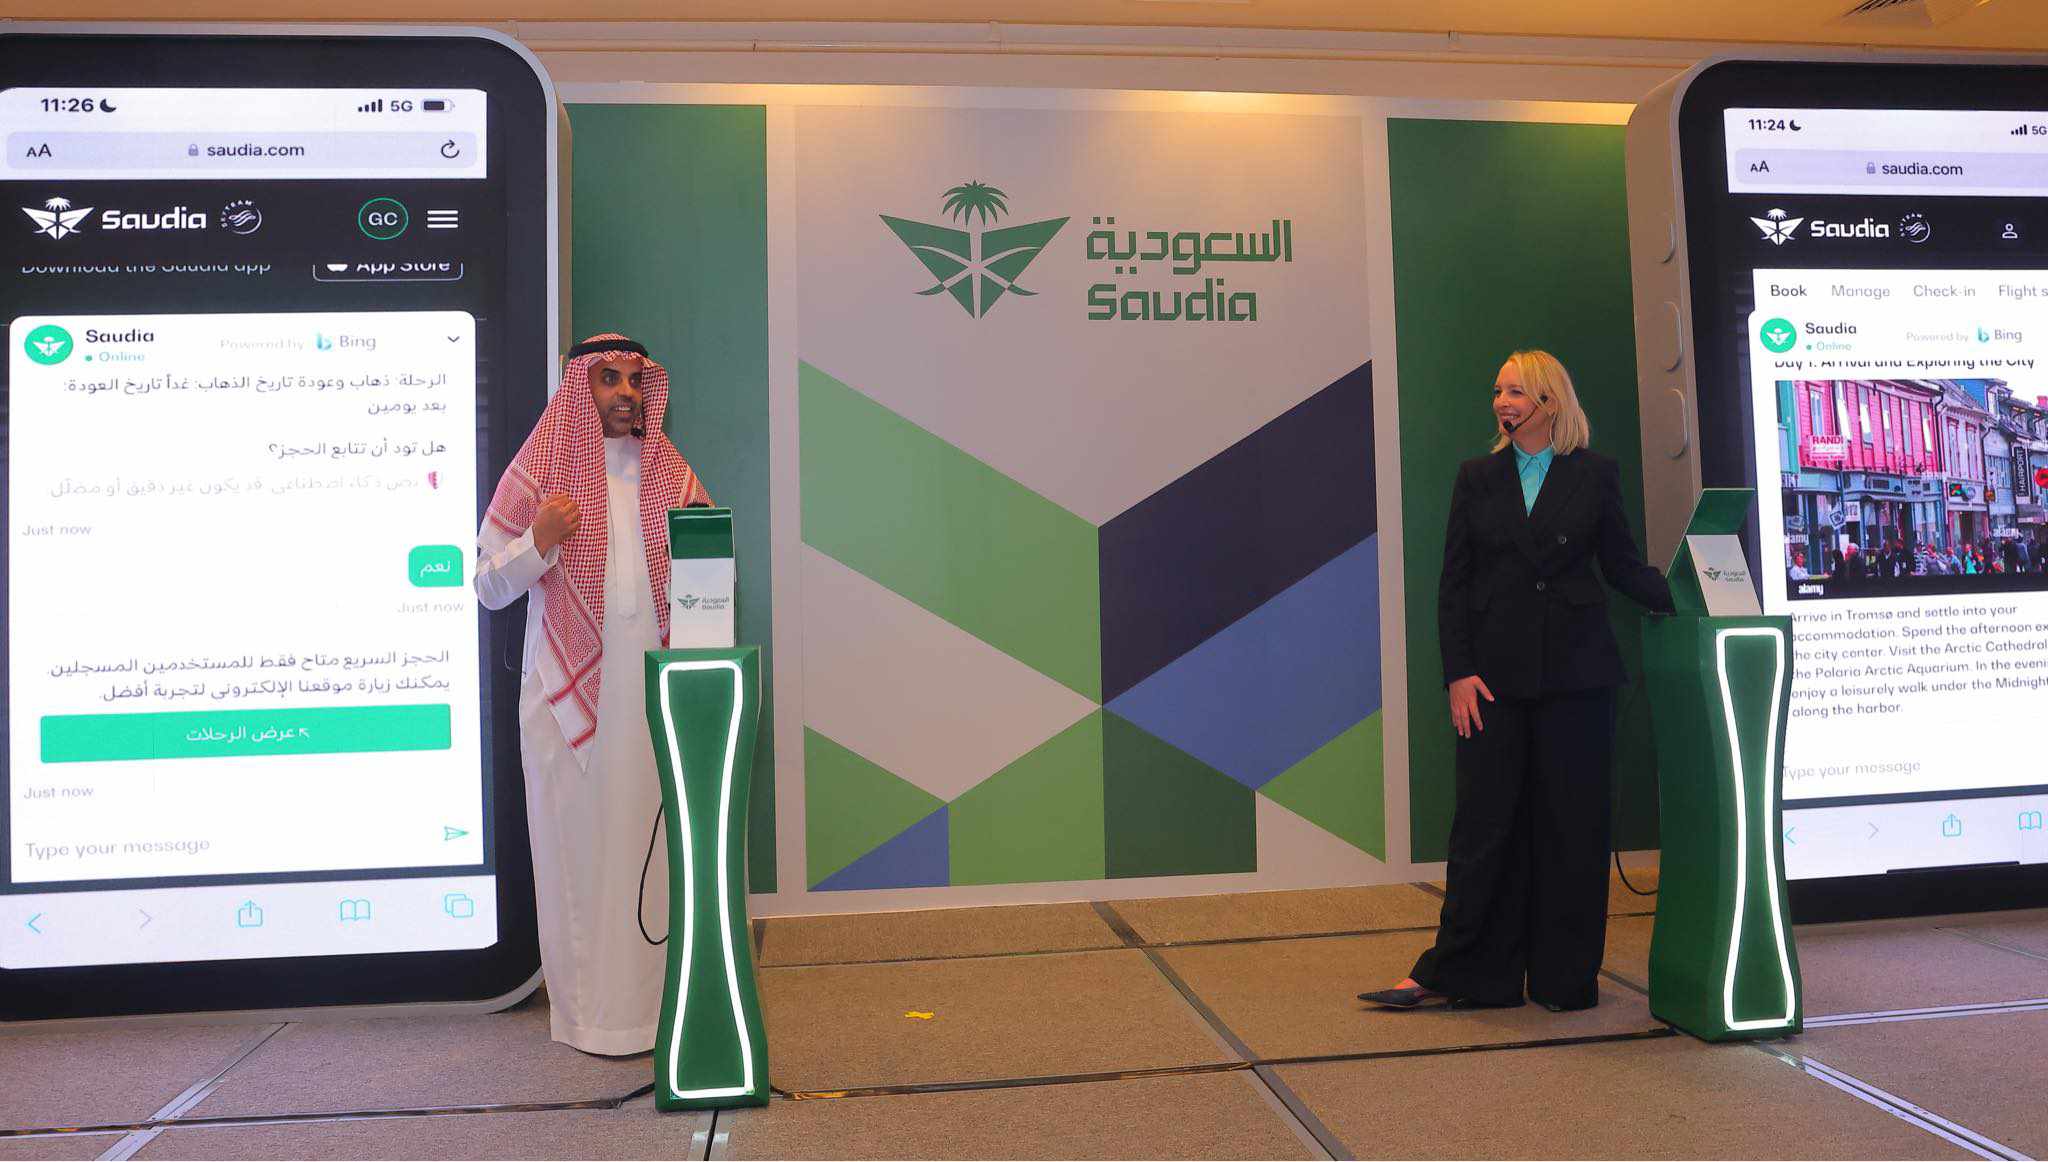 الخطوط السعودية تطلق النسخة التجريبية لأحدث خدماتها الرقمية  بتقنيات الذكاء الاصطناعي